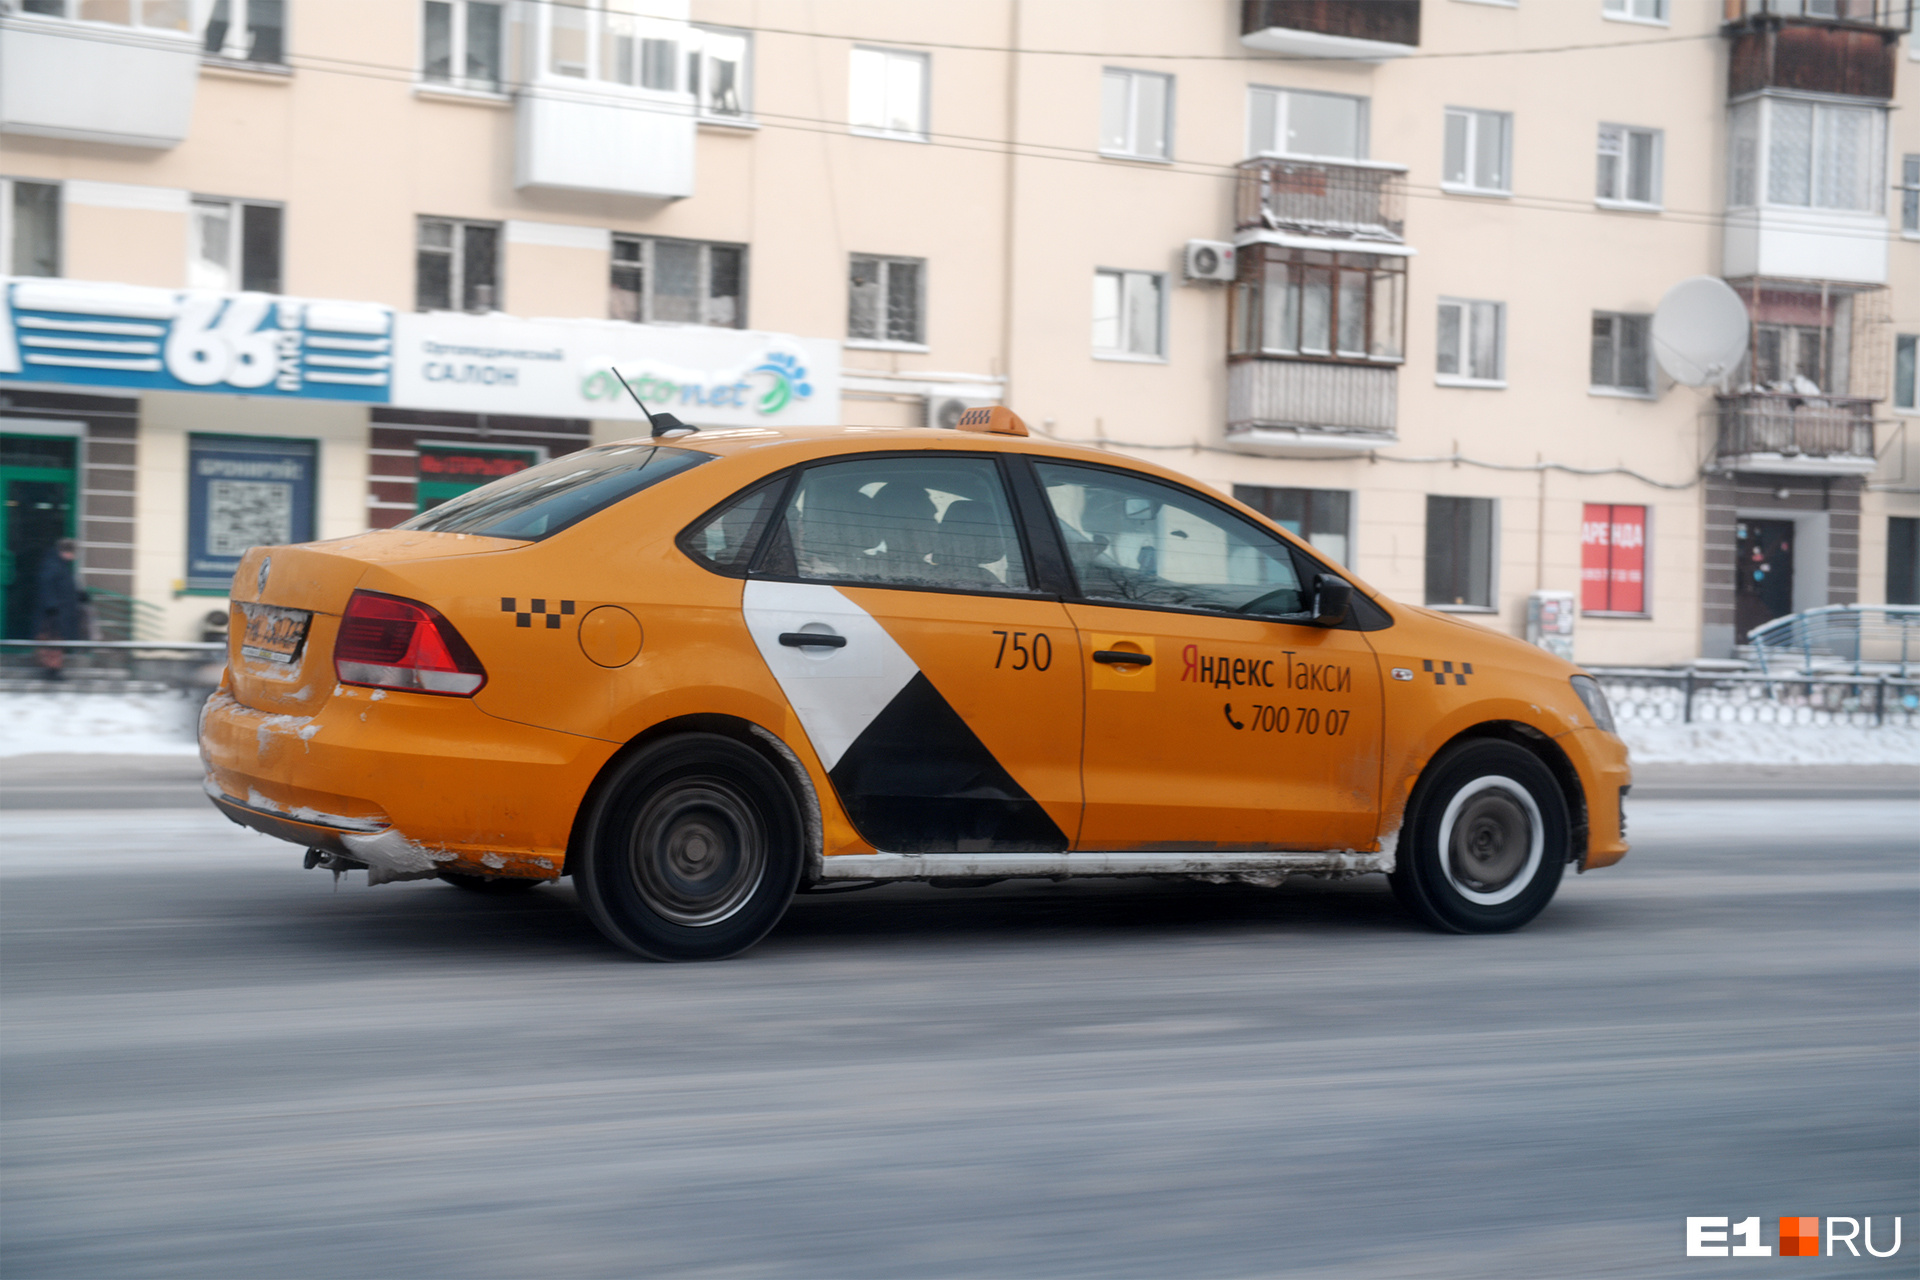 Как уехать на работу? В Екатеринбурге взлетели цены на такси